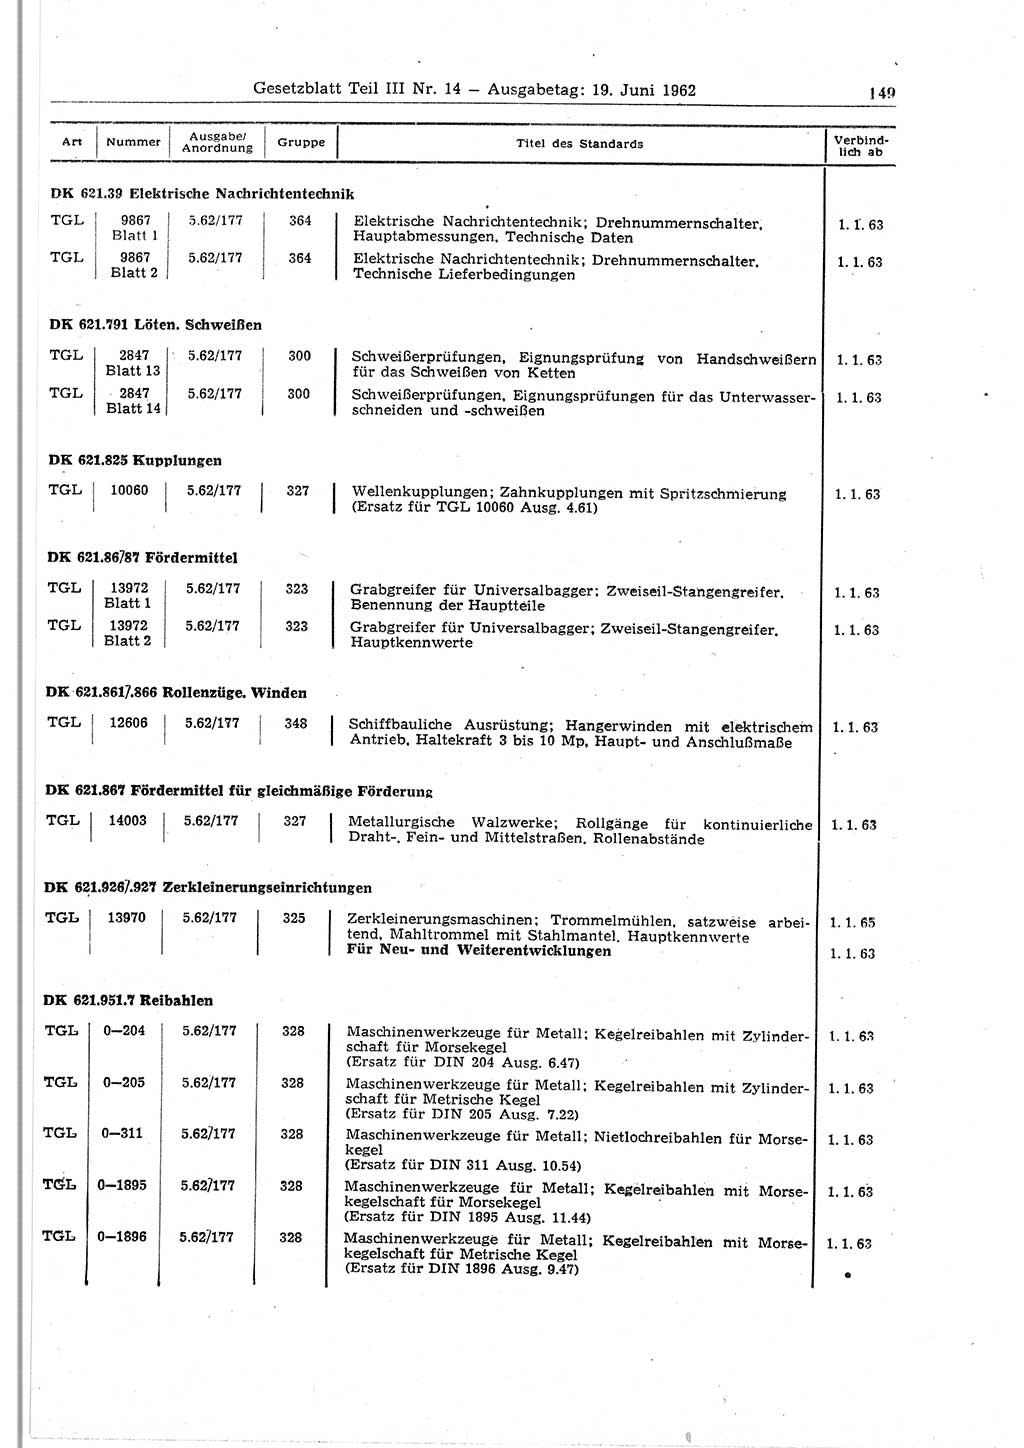 Gesetzblatt (GBl.) der Deutschen Demokratischen Republik (DDR) Teil ⅠⅠⅠ 1962, Seite 149 (GBl. DDR ⅠⅠⅠ 1962, S. 149)